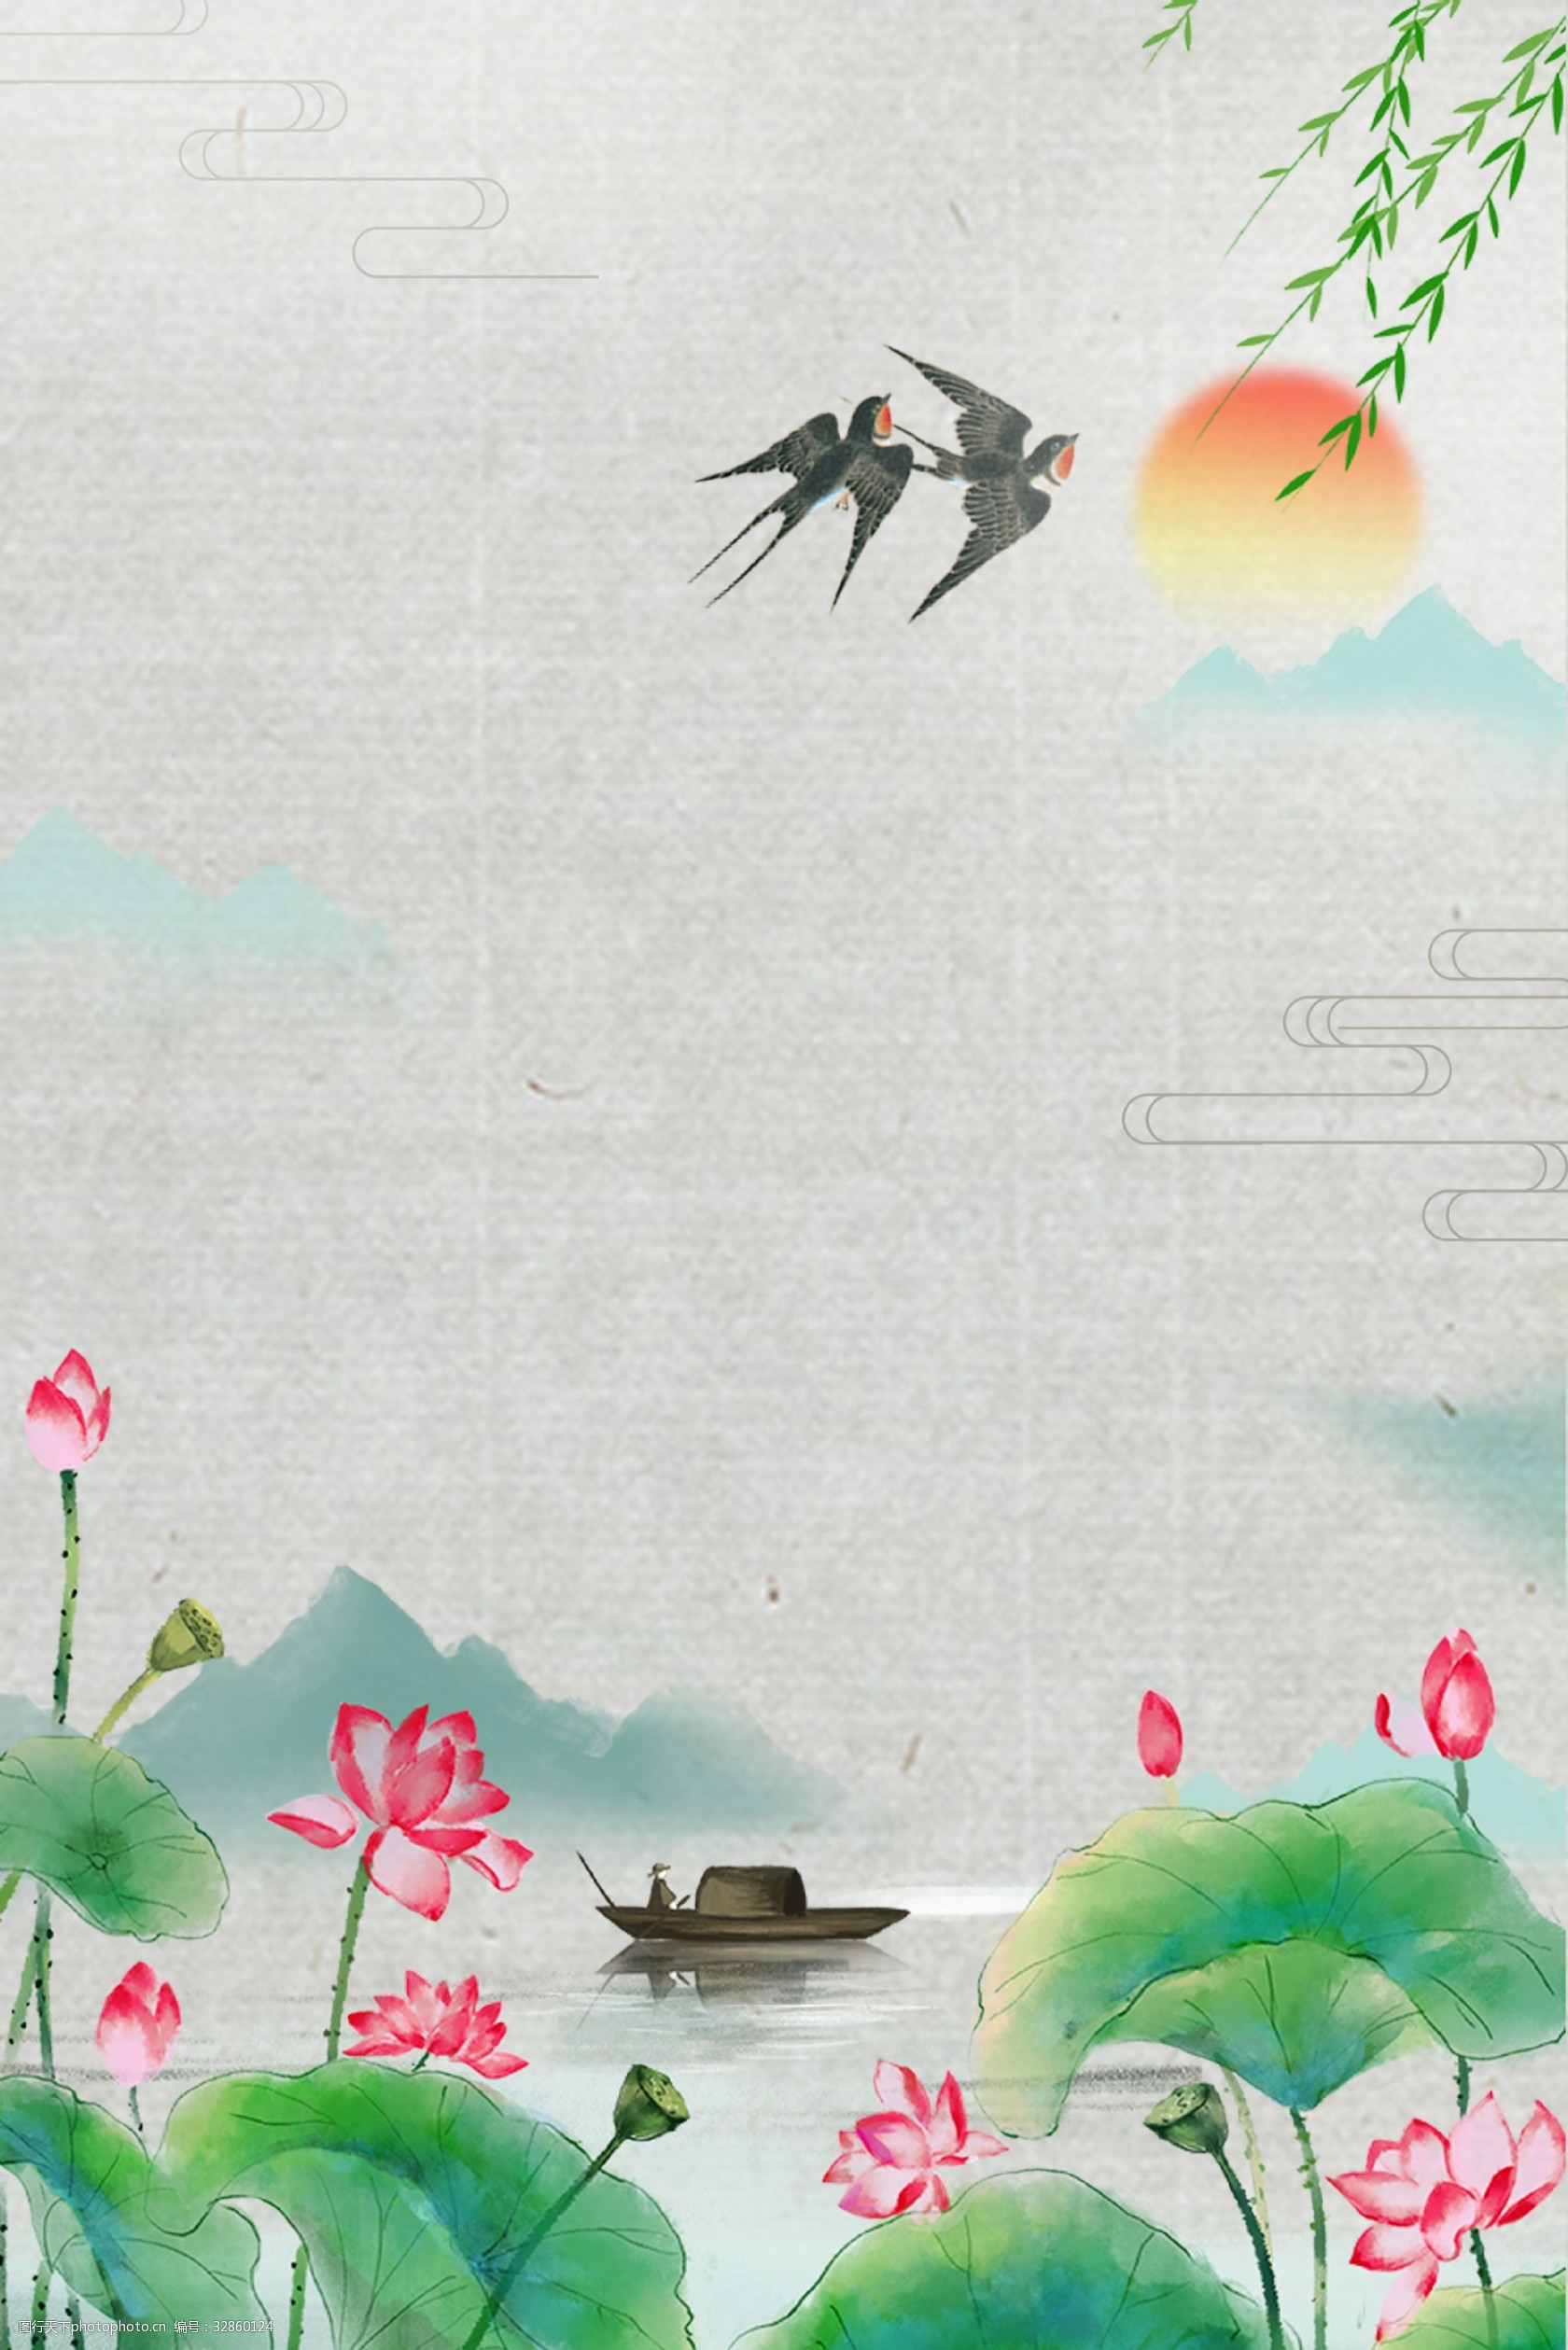 关键词:夏季复古荷塘海报背景图 中国风 山水 水墨 荷花 荷塘 燕子